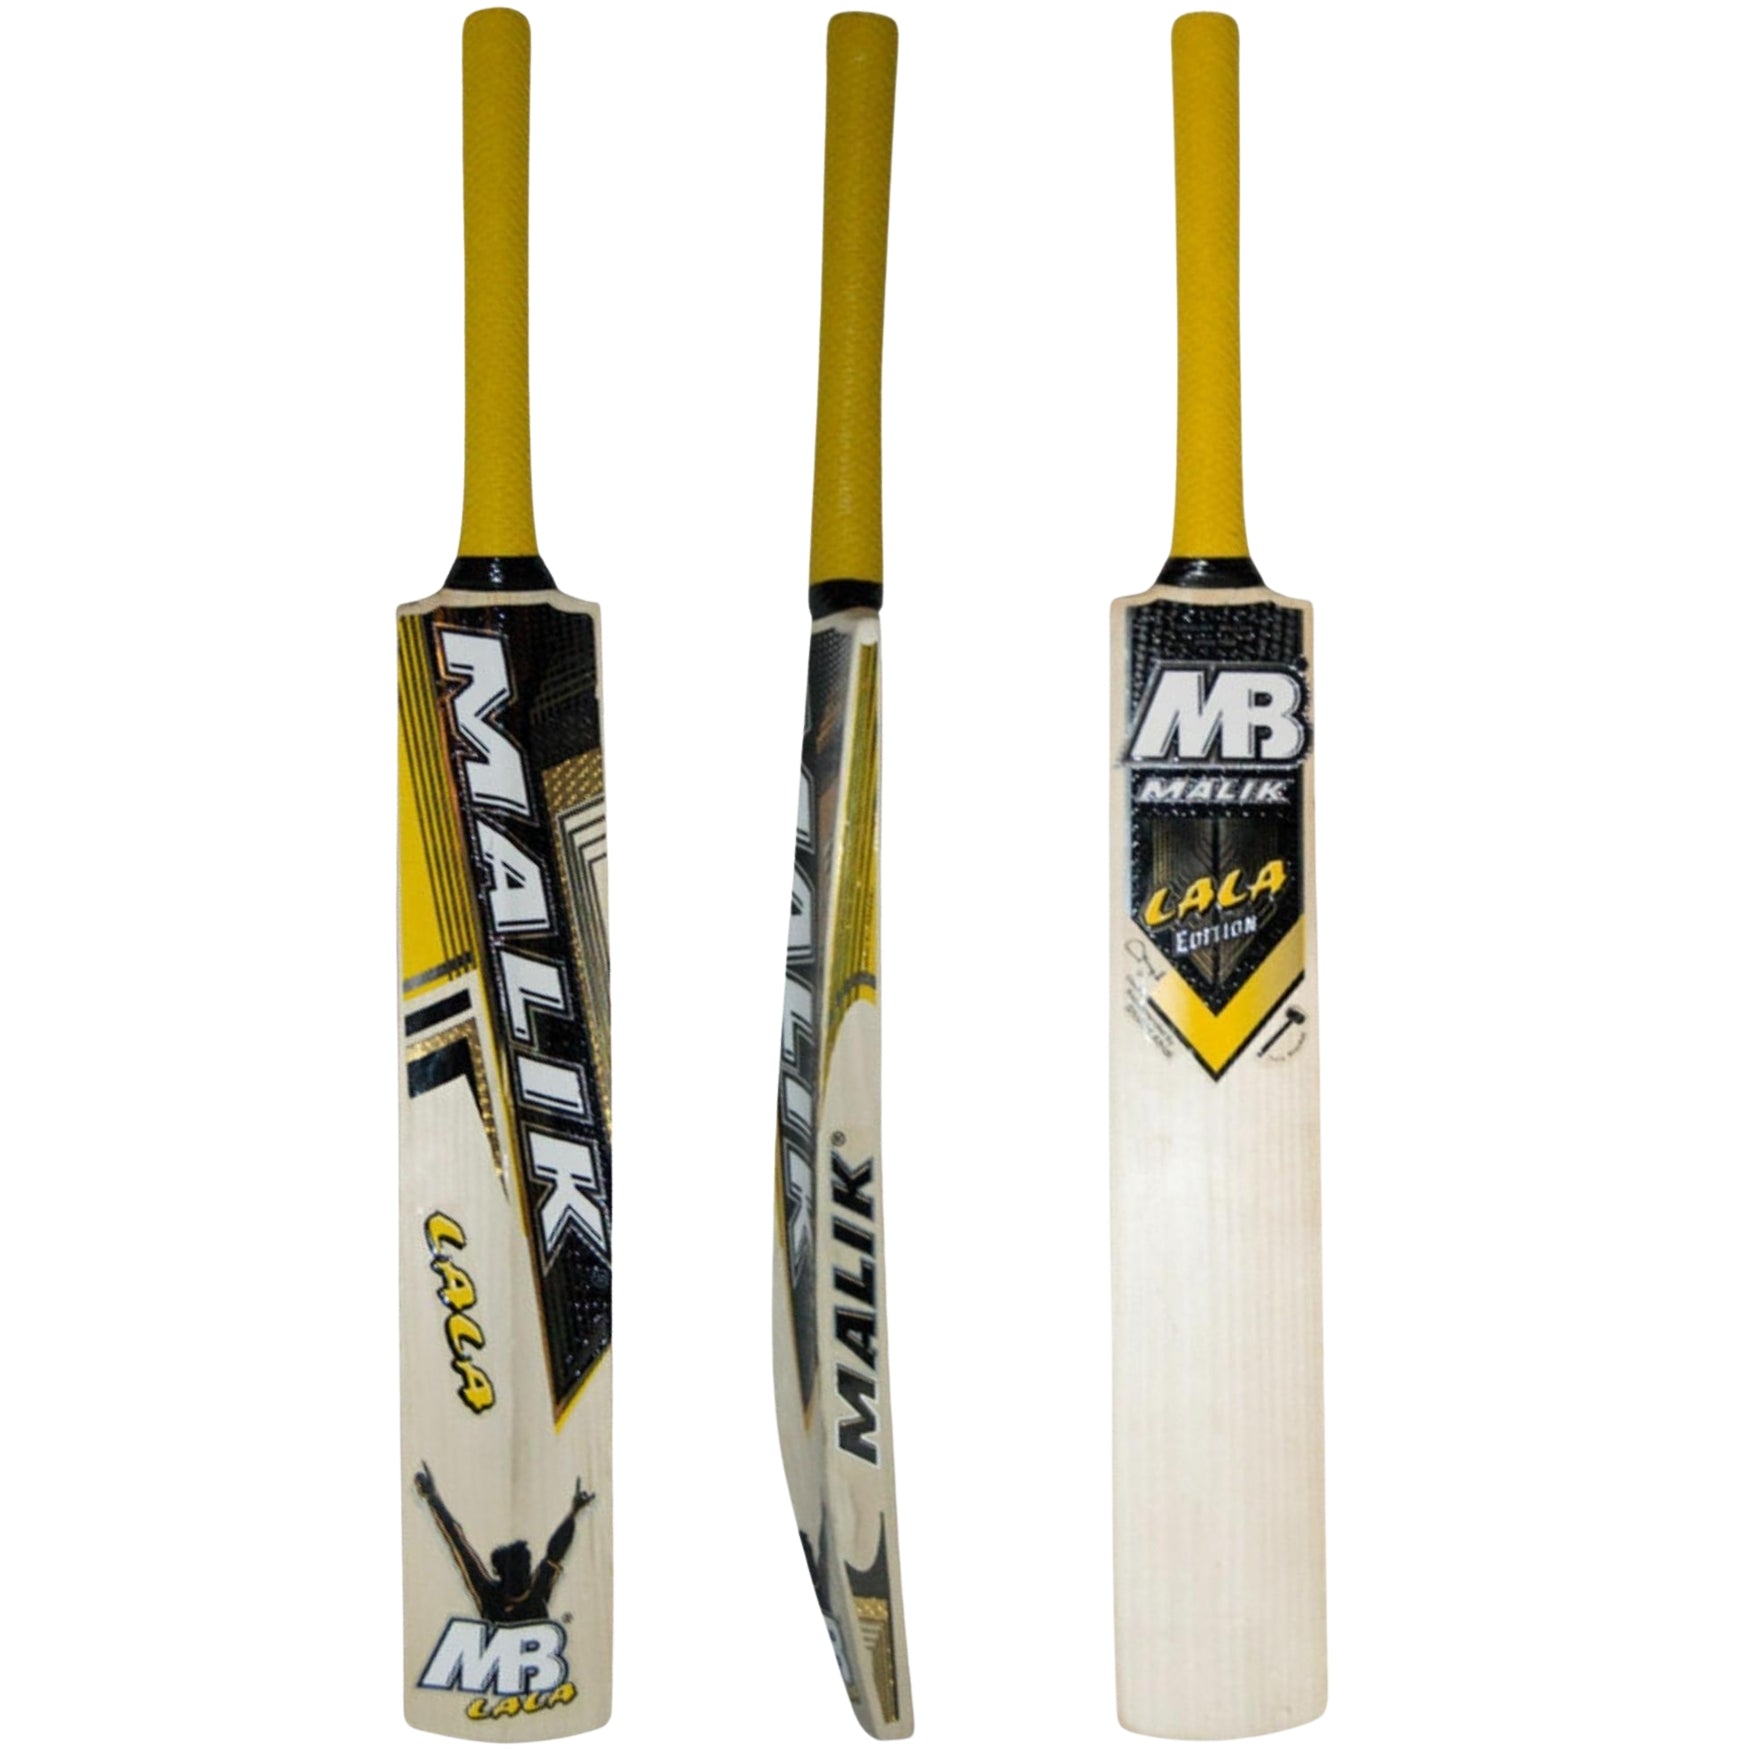 MB Malik Lala Gold Edition Cricket Bat